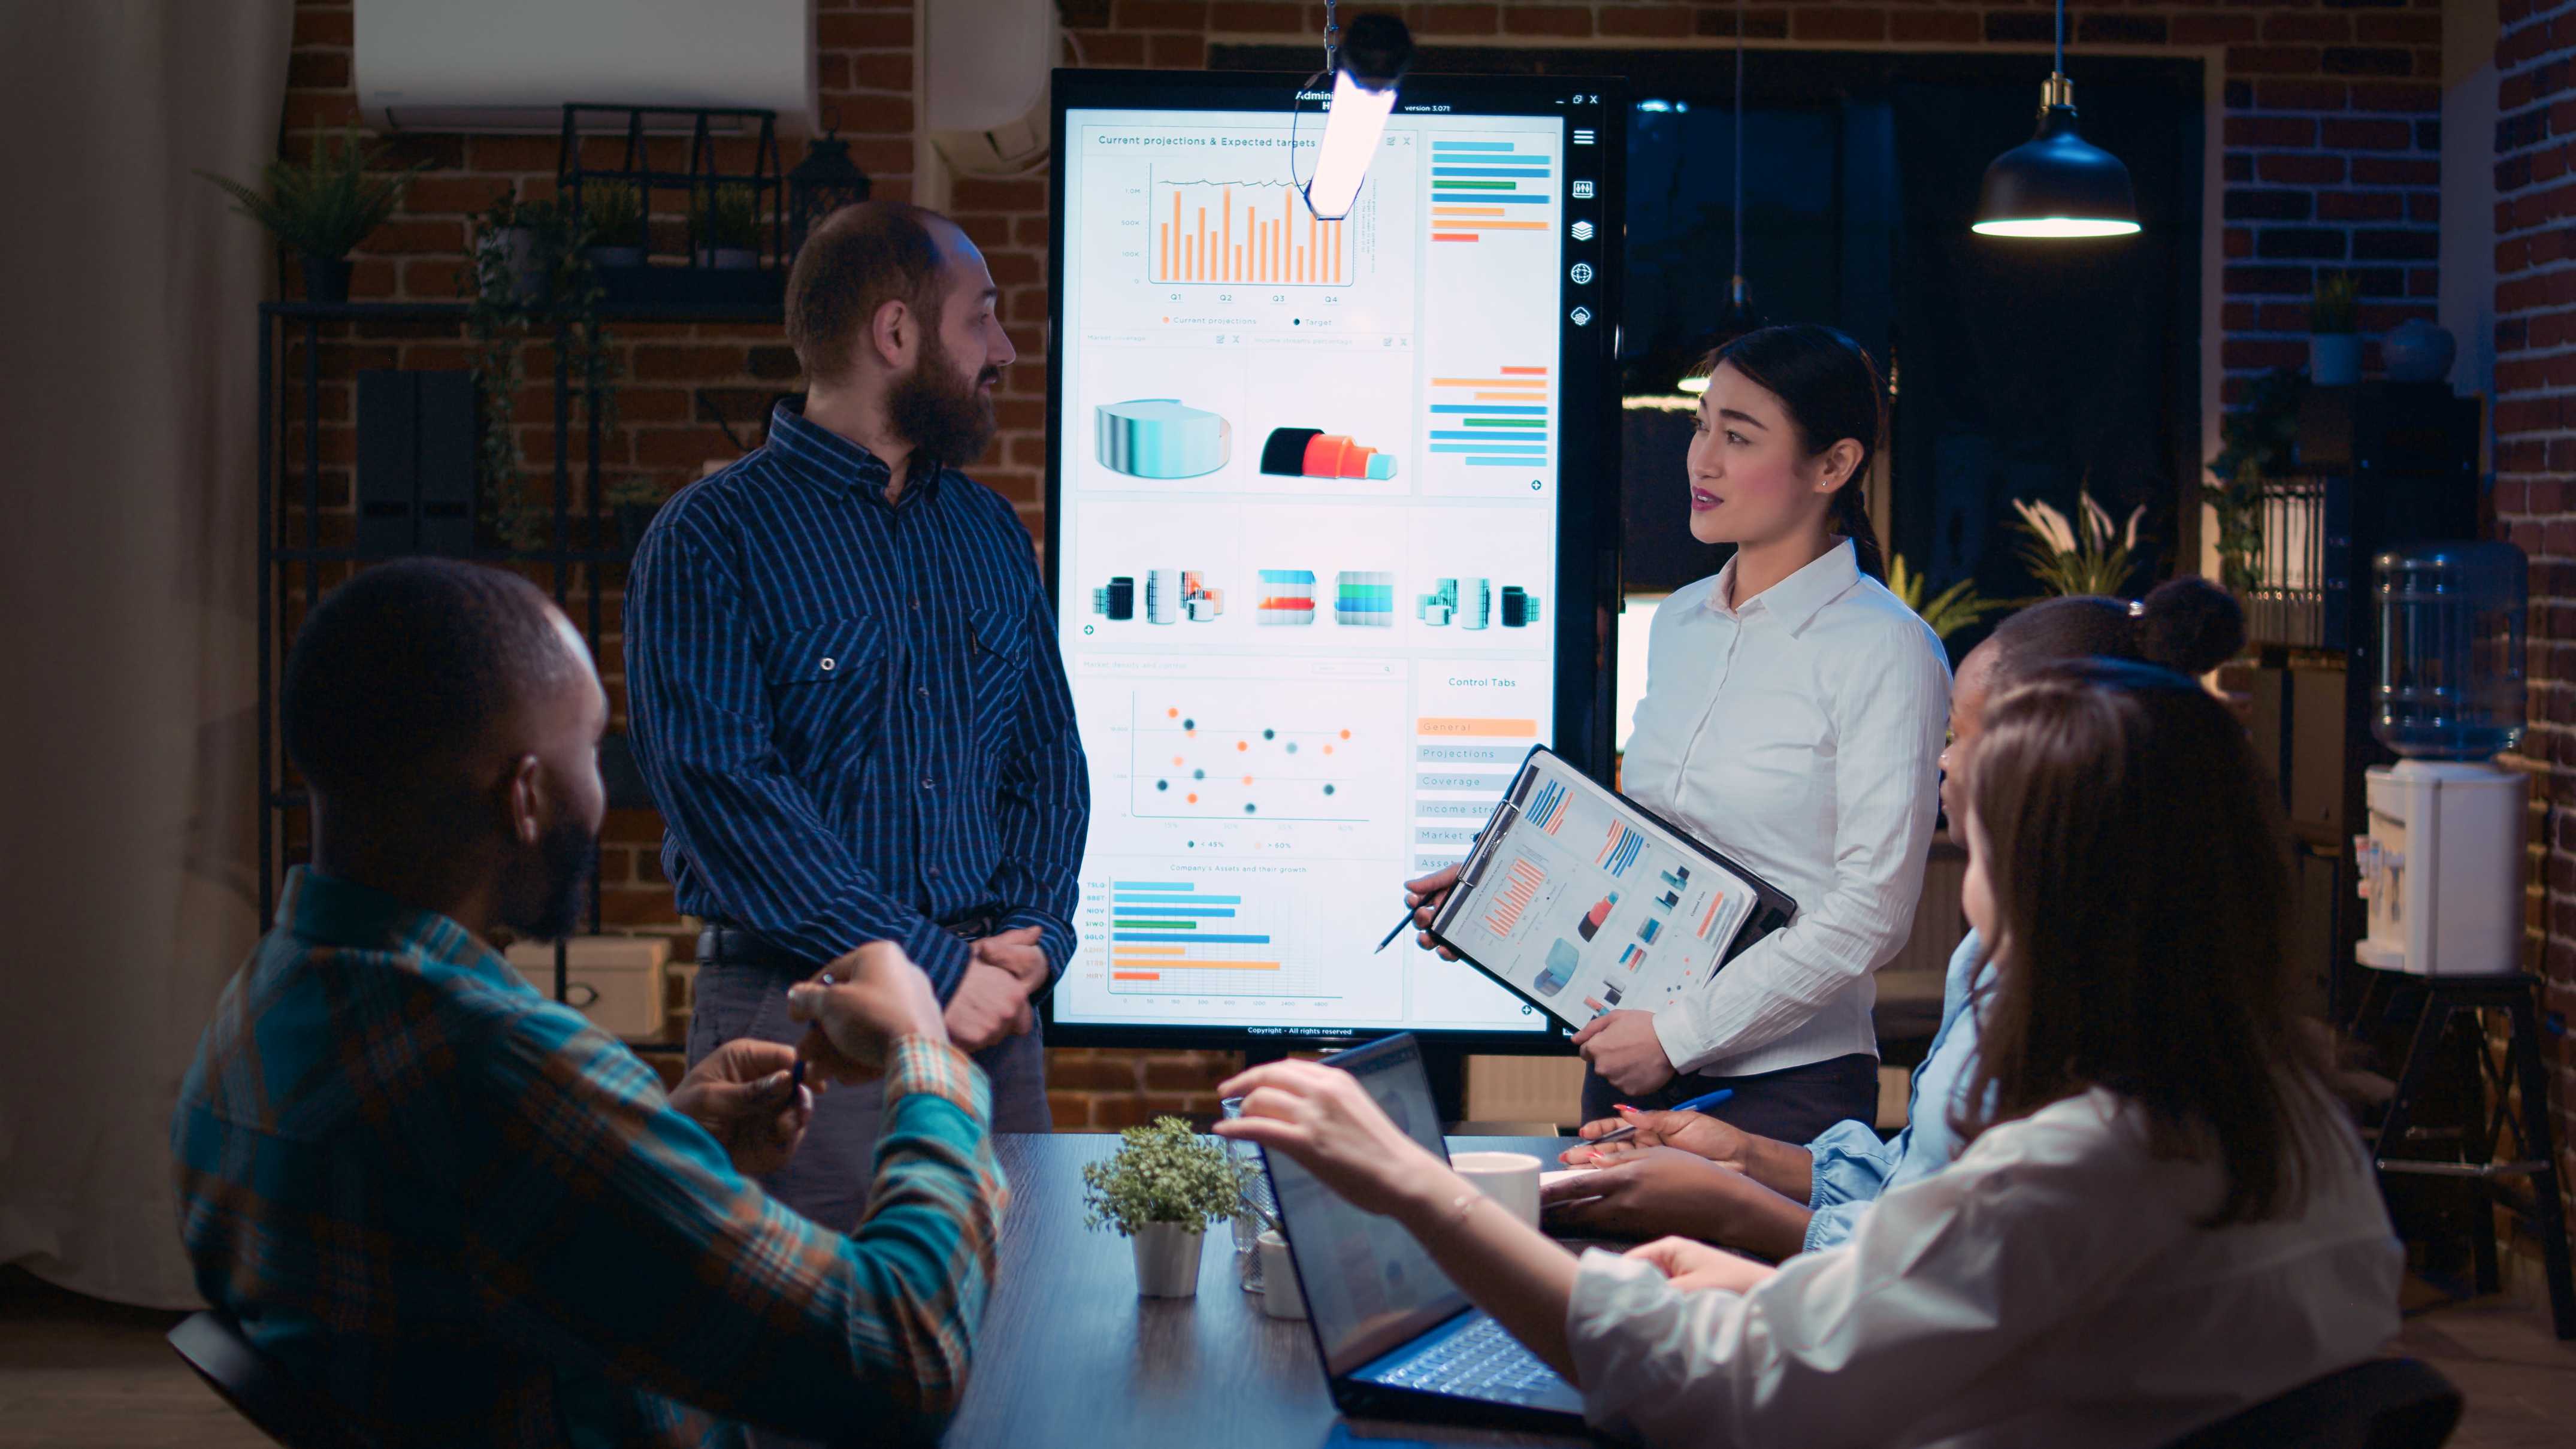 Deux personnes présentent des tableaux de données projetés à un écran durant une réunion.